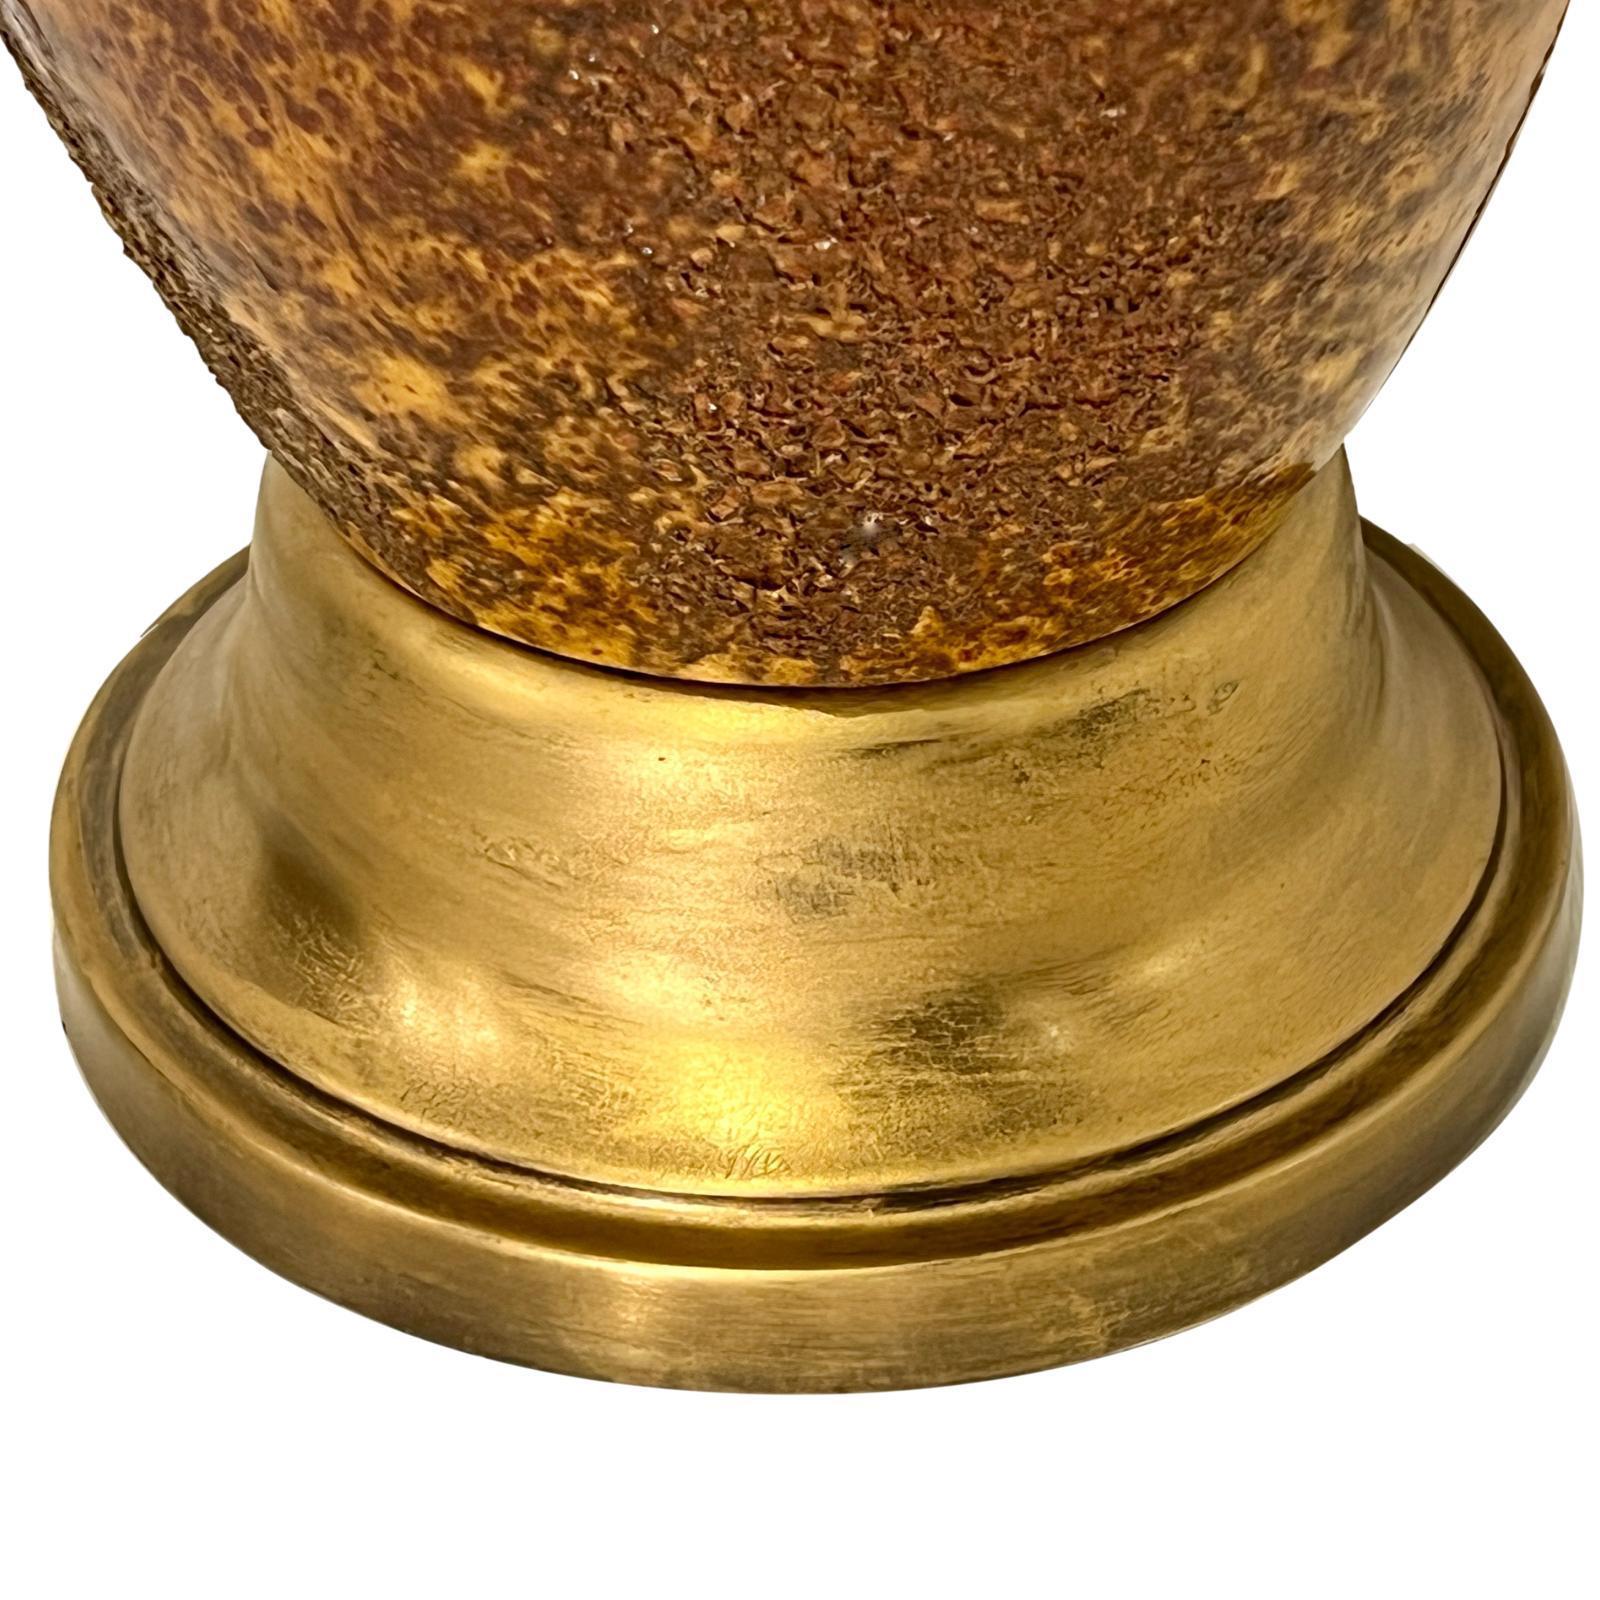 Eine italienische Tischlampe aus Keramik aus den 1960er Jahren.

Abmessungen:
Höhe des Gehäuses: 19